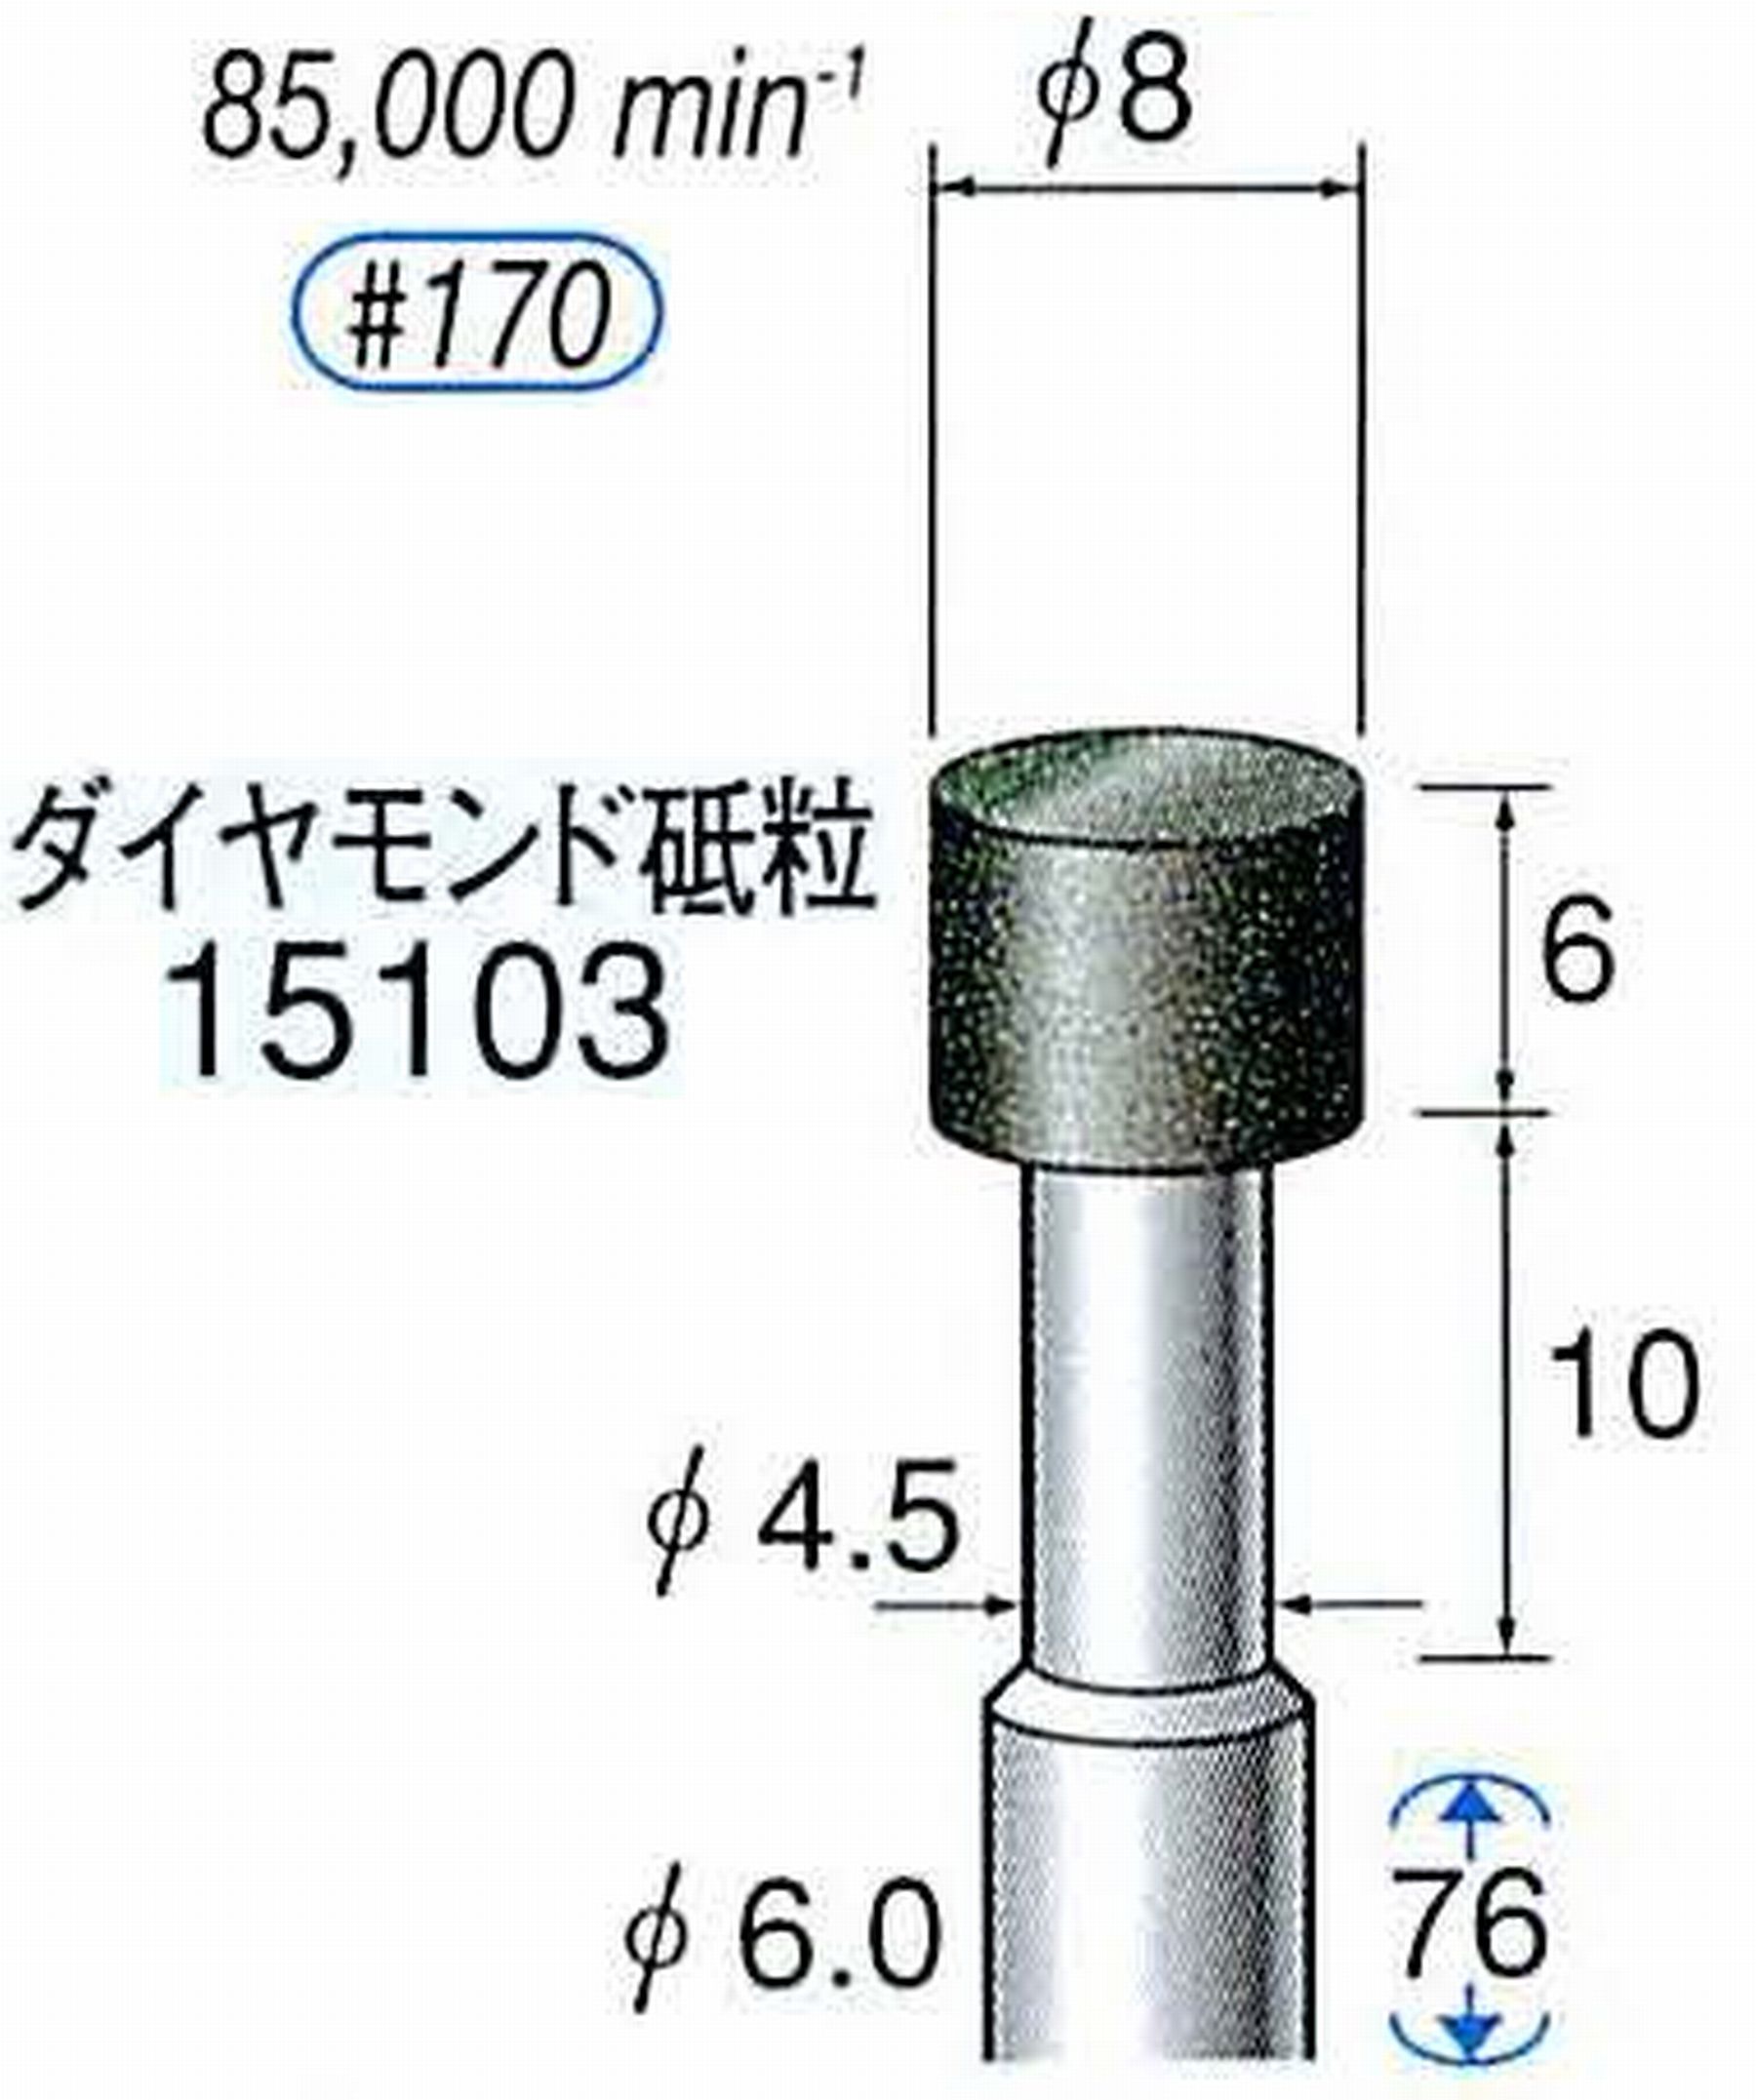 ナカニシ/NAKANISHI レジノイドダイヤモンド ダイヤモンド砥粒 軸径(シャンク)φ6.0mm 15103